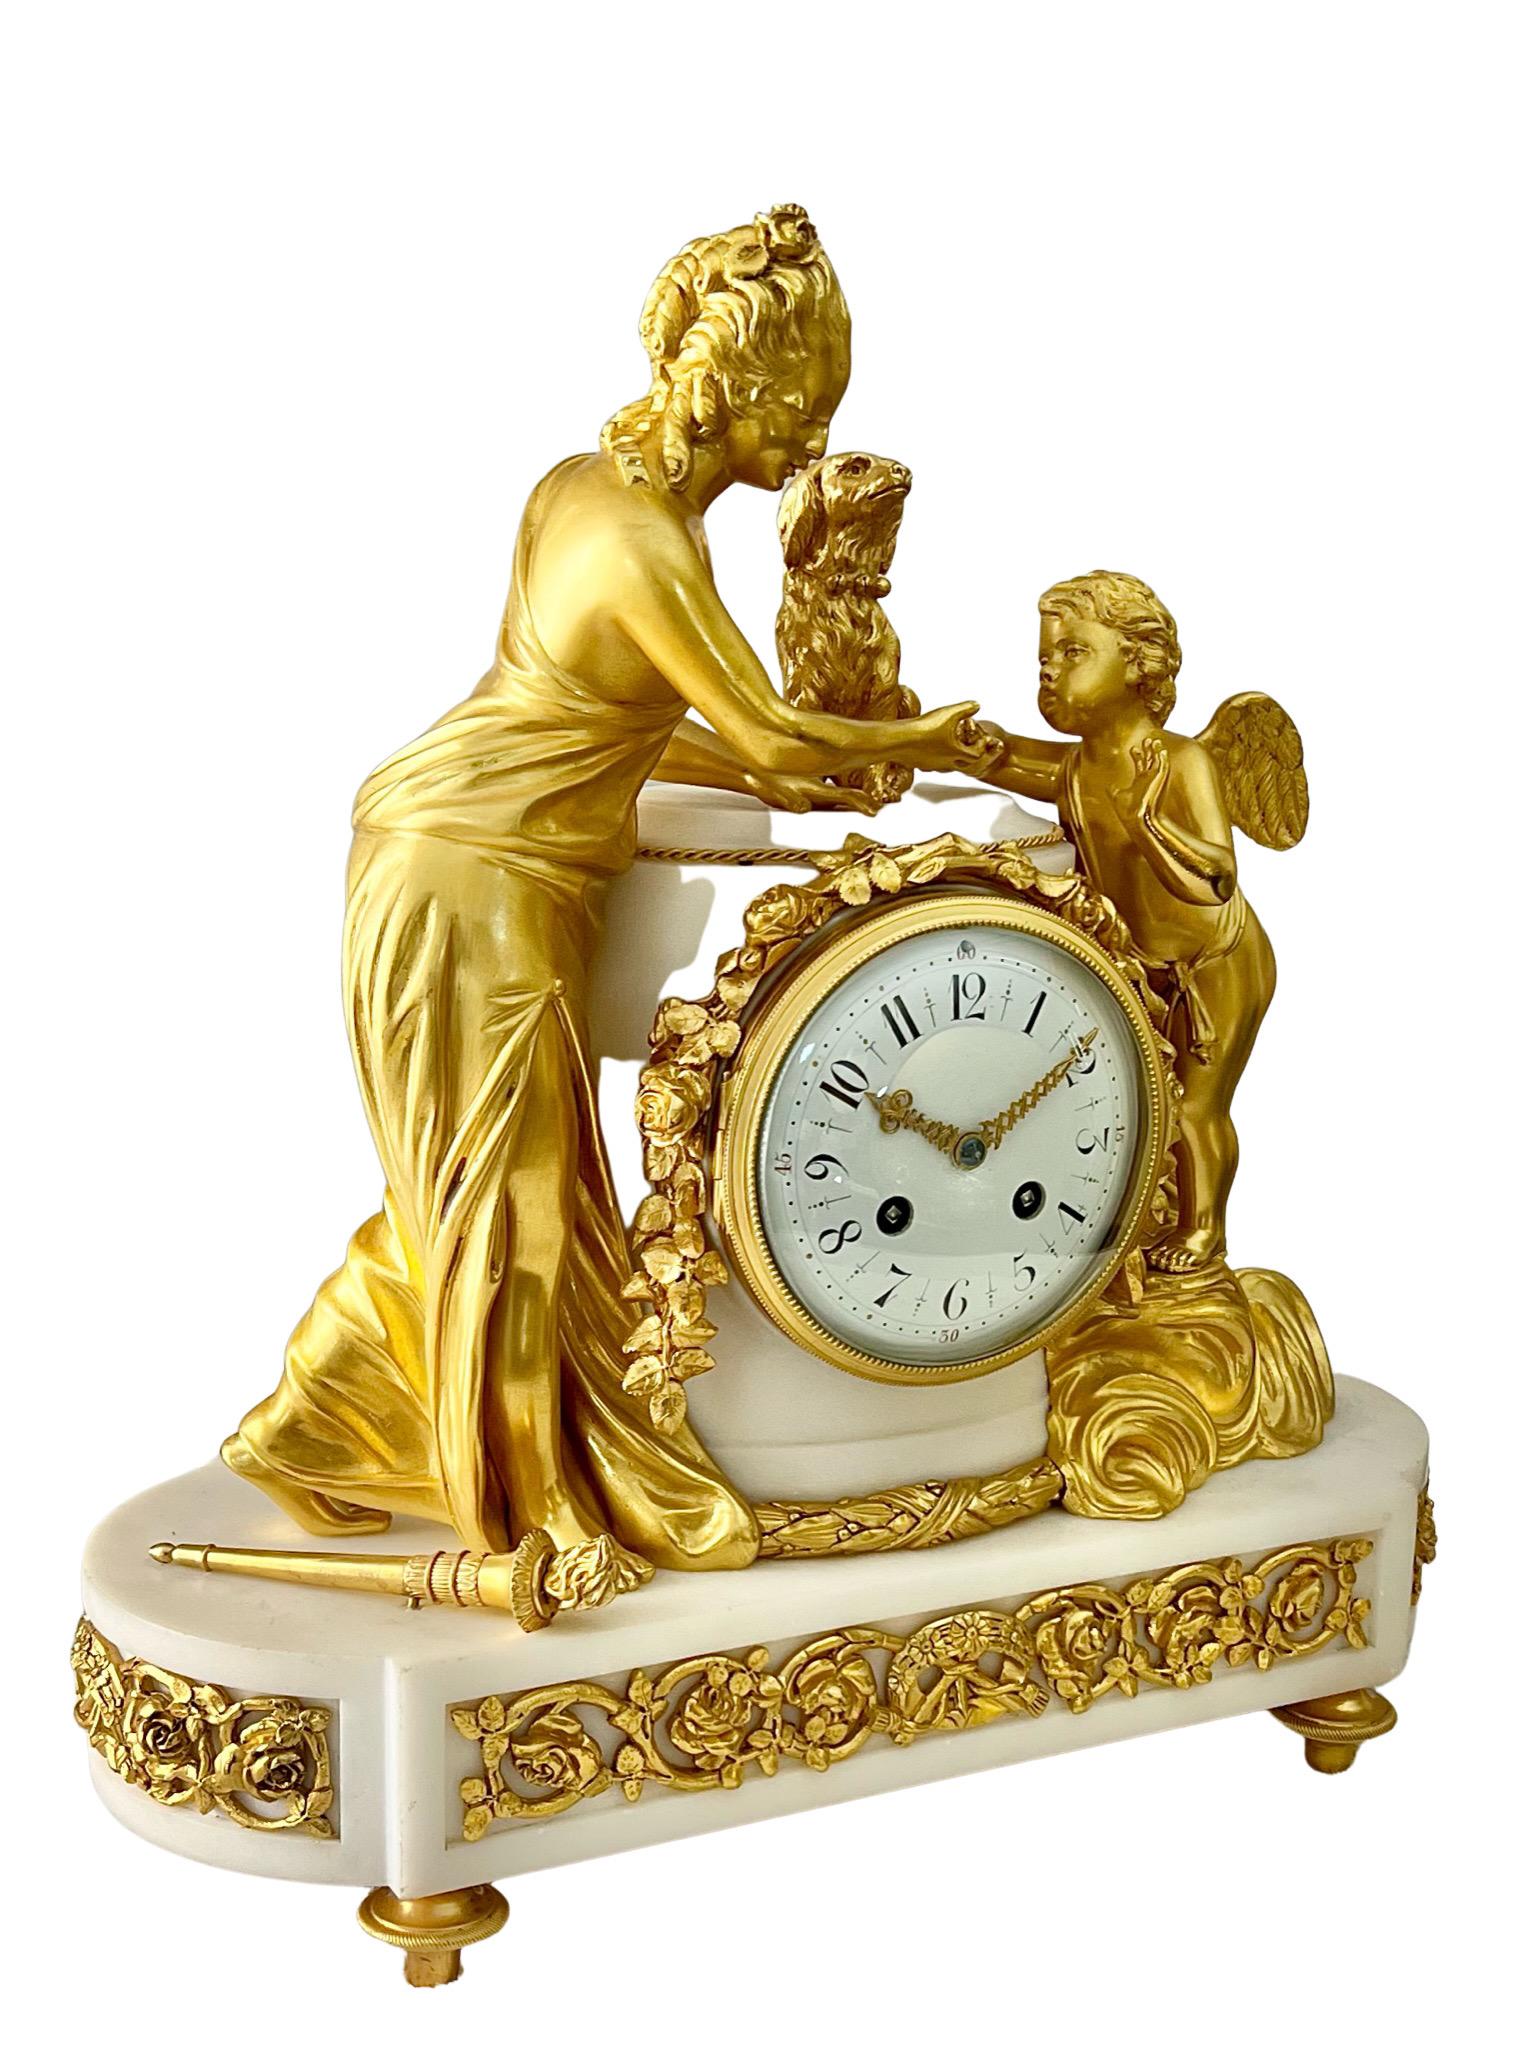 Magnifique pendule en marbre blanc montée en bronze doré, de style Louis XV1. 

Les figures magnifiquement moulées de Vénus et de Cupidon jaillissent des nuages, avec une torche enflammée à leurs pieds et un chien entre eux, symbolisant l'amour